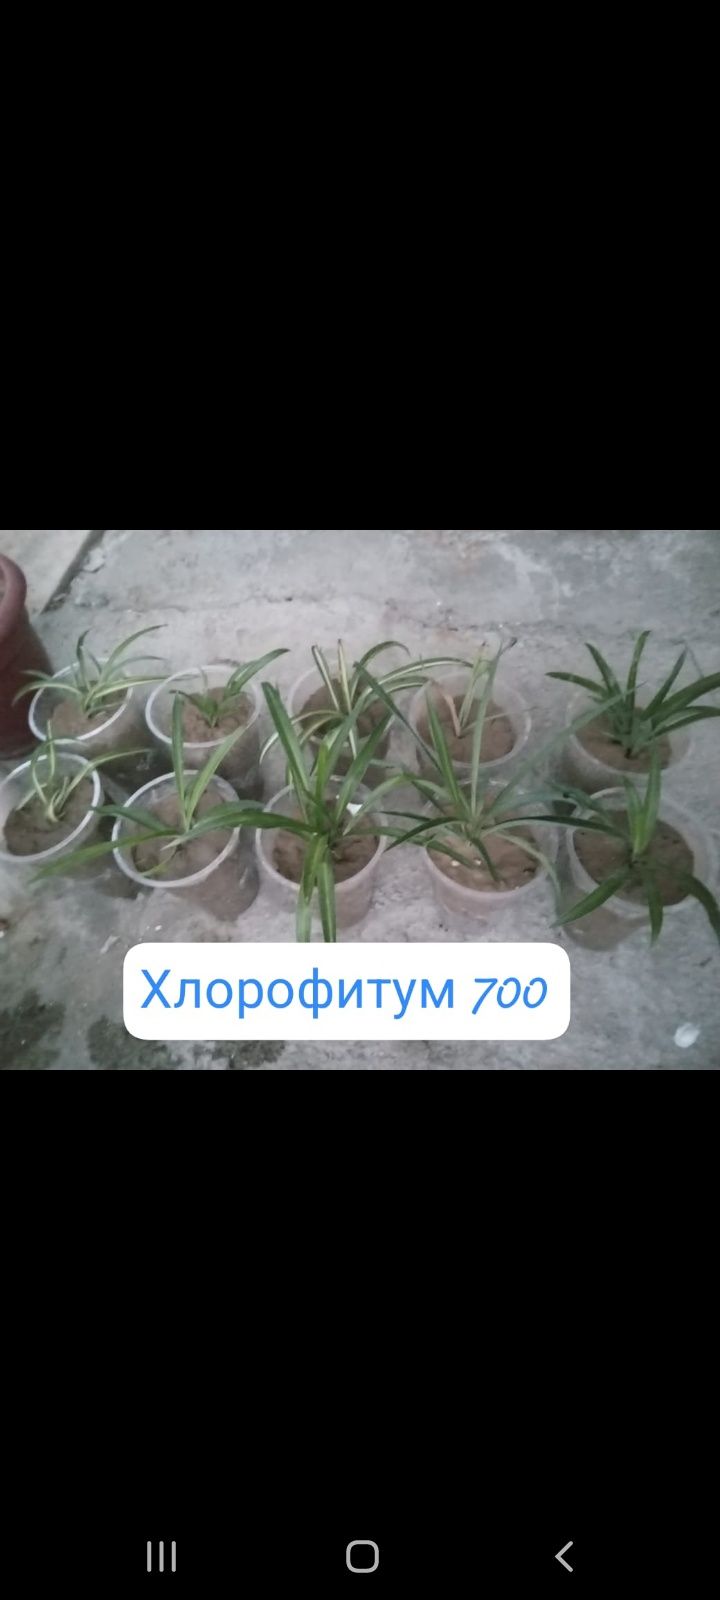 Продаю комнатные растения